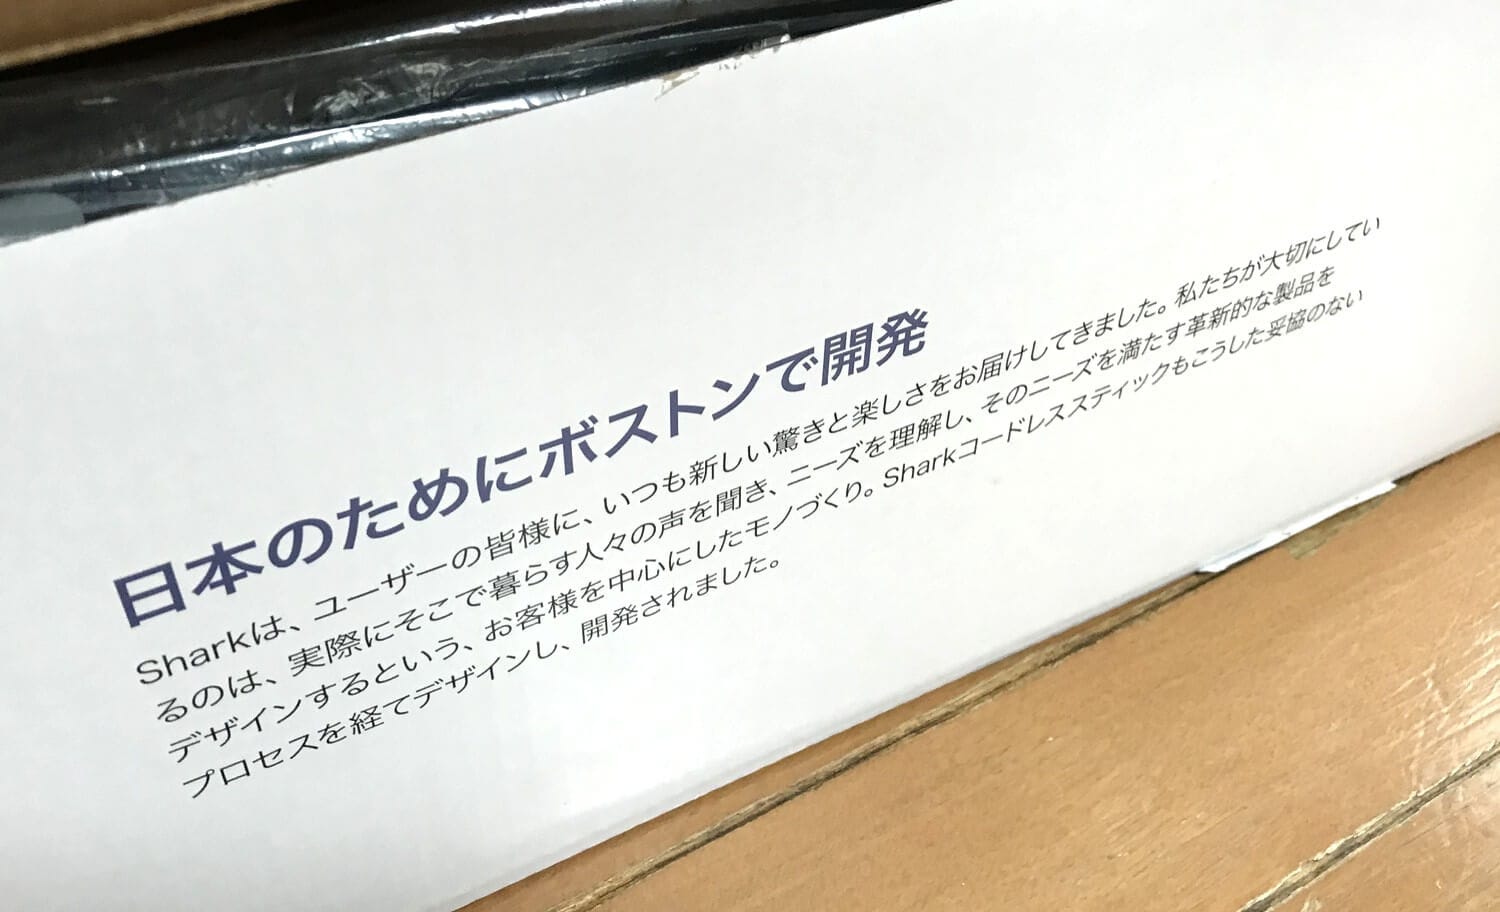 エヴォパワーシステムの外箱には「日本のためにボストンで開発」というメッセージが書かれています。作り手の思いを伝えるためのこんな工夫、うれしいですね。